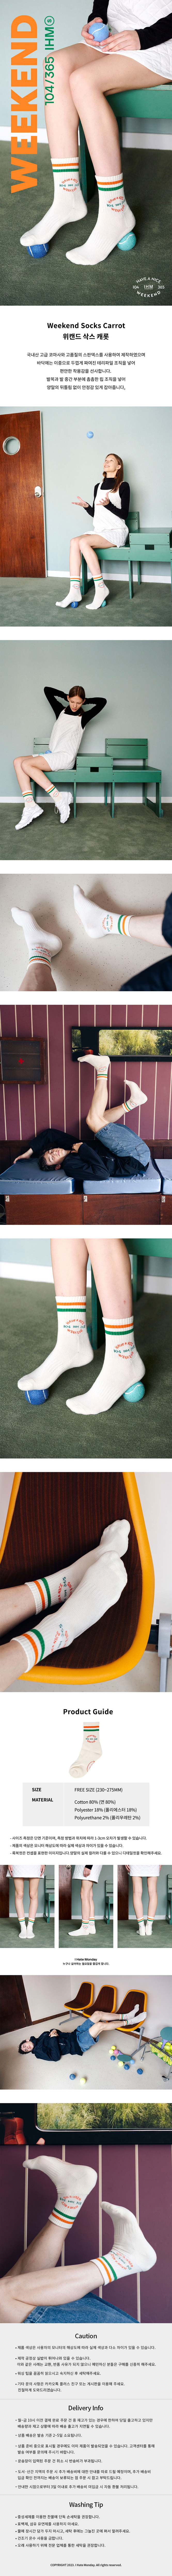 Weekend-Socks-Carrot_190432.jpg